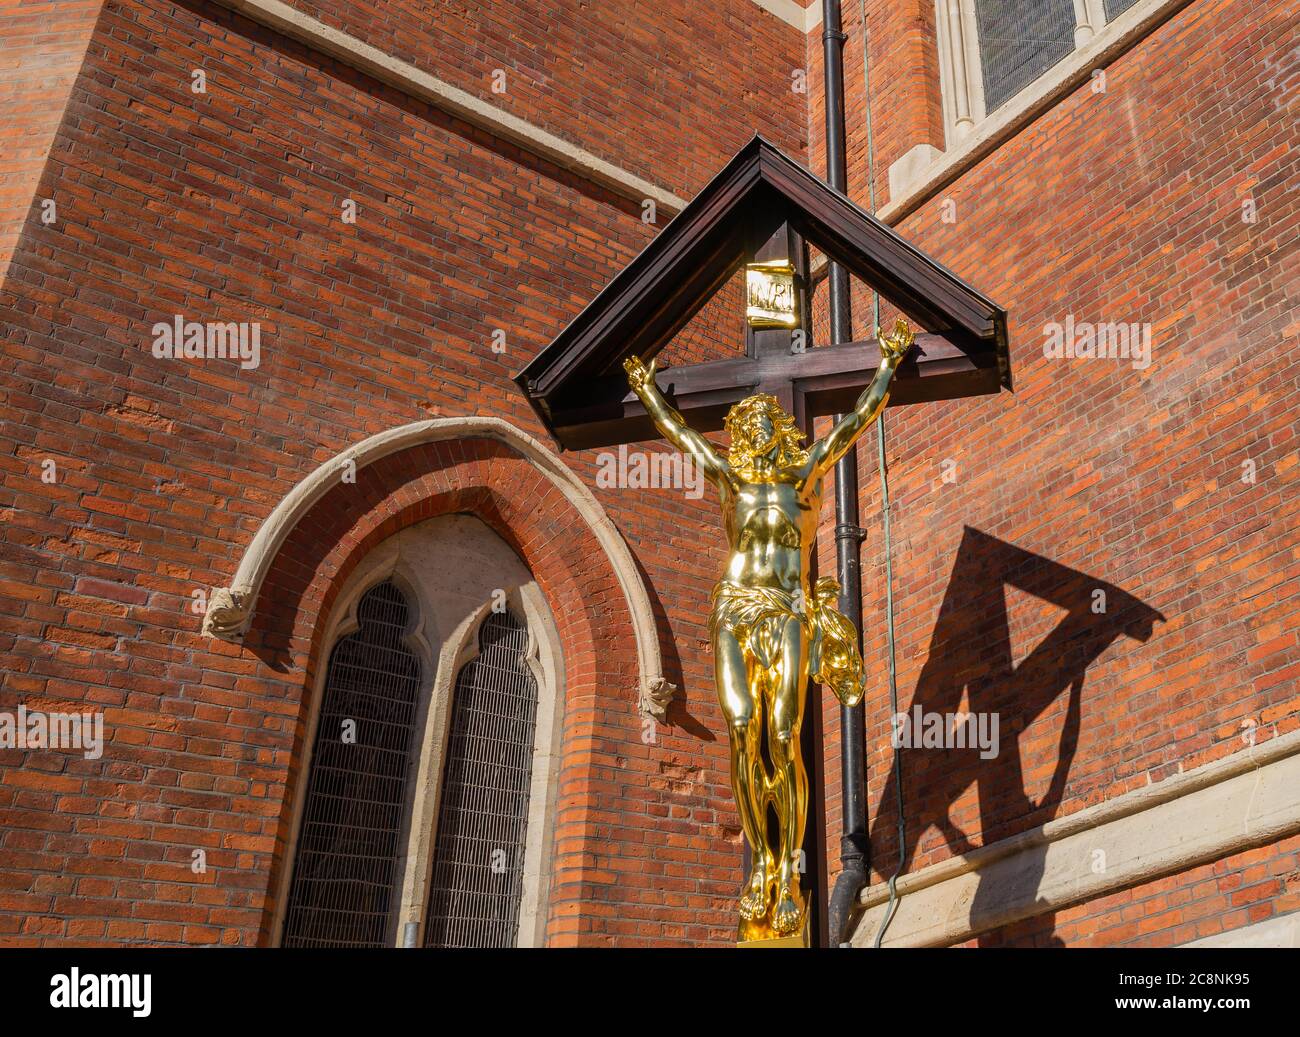 L'église St Mary Magdalene de Paddington, Londres, s'est achevée dans les années 1870 dans un bidonville dense. Mémorial de la première Guerre mondiale du Christ (fonte et doré) sur croix en bois. Banque D'Images